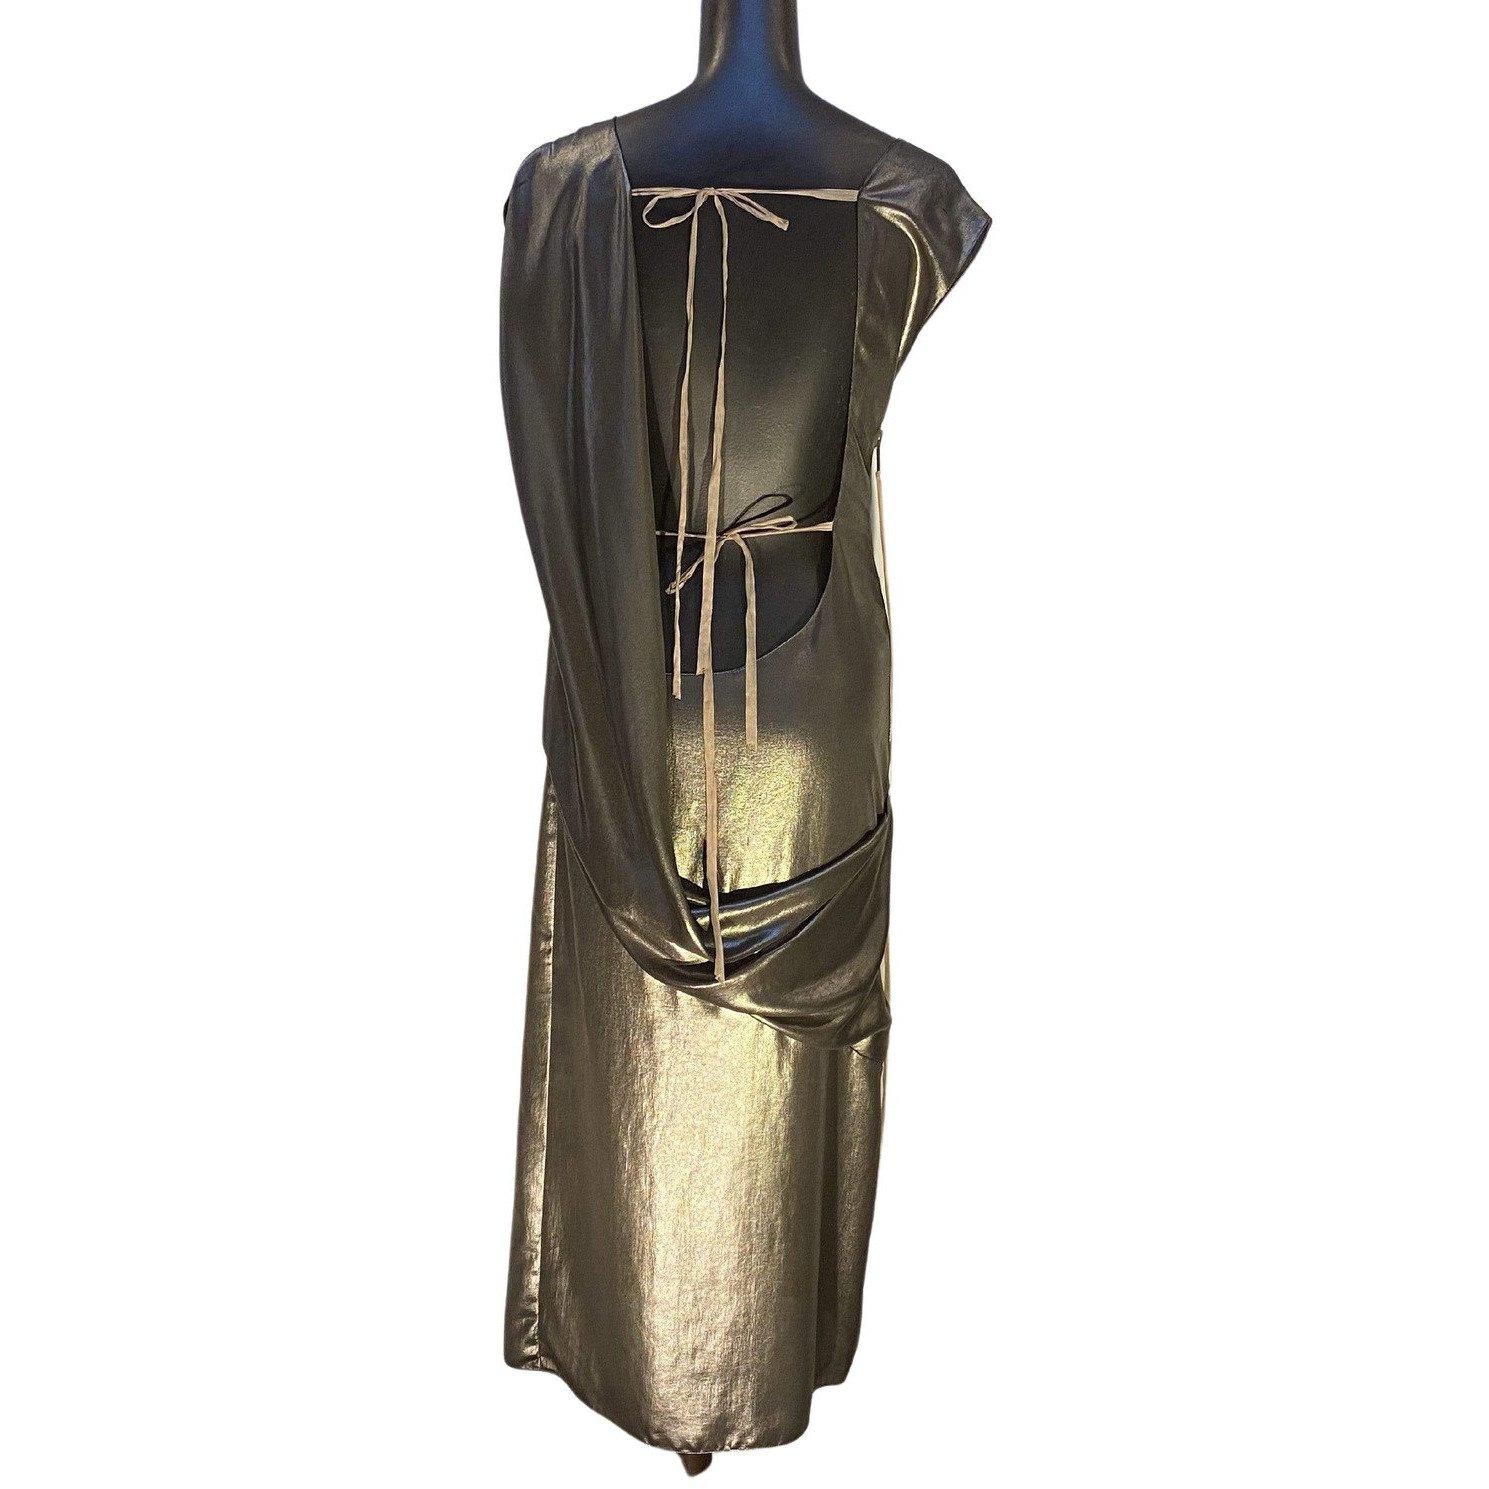 Cette robe vintage de Thimister est dotée d'un dos drapé très séduisant. Elle est dotée d'une fermeture à glissière en métal lourd avec un ruban pendentif et de deux rubans plus délicats à nouer dans le dos, pour fixer la robe sans manches